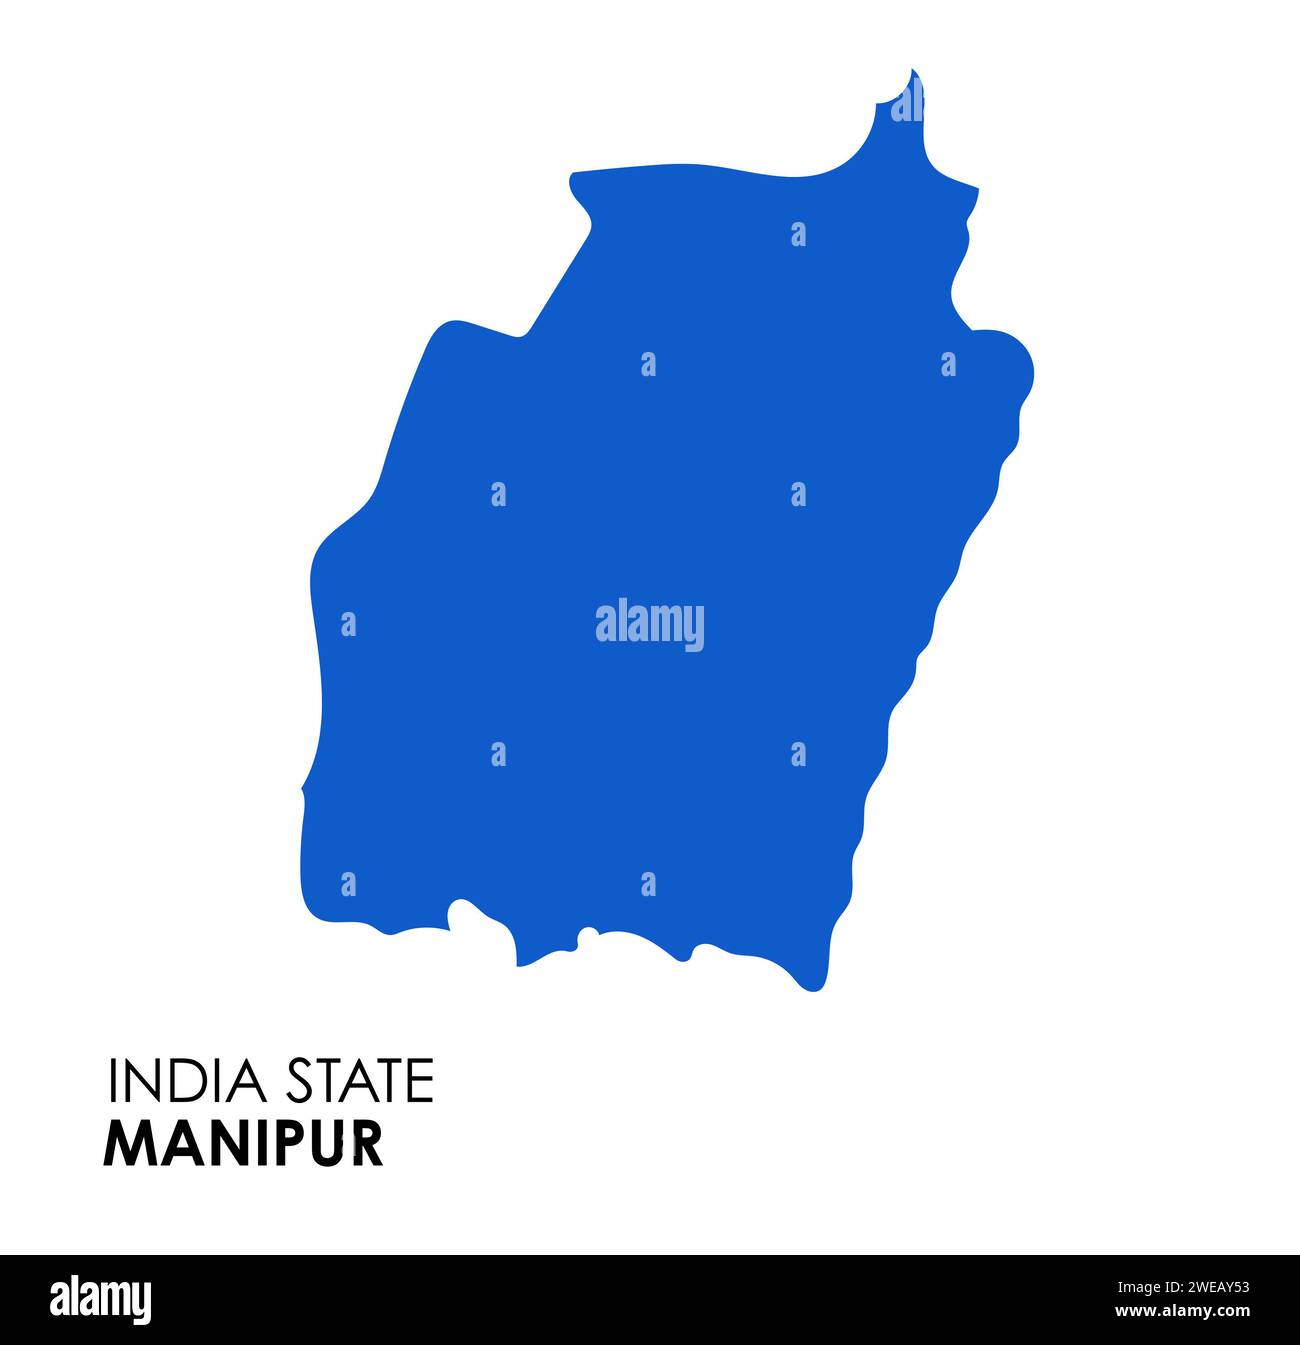 Carte Manipur de l'état indien. Illustration vectorielle de carte Manipur. Manipur carte sur fond blanc. Banque D'Images